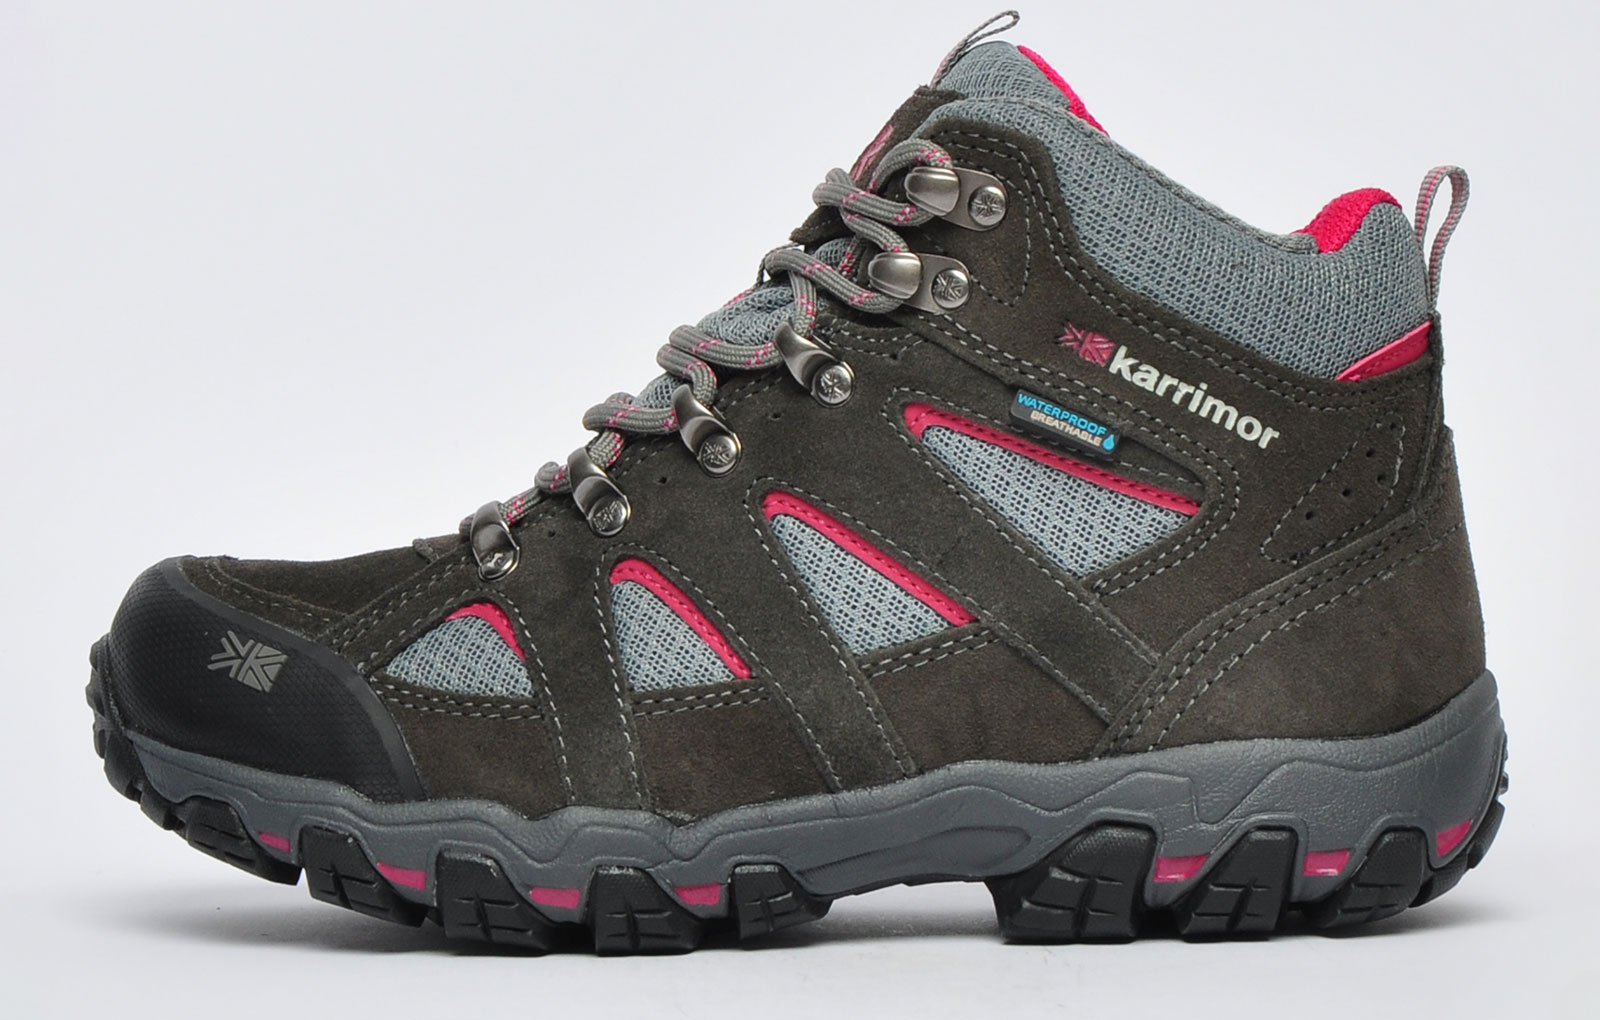 Karrimor Bodmin Low 5 Ladies Weathertite Hiking Walking Shoes UK 7.5 EU 41.5 